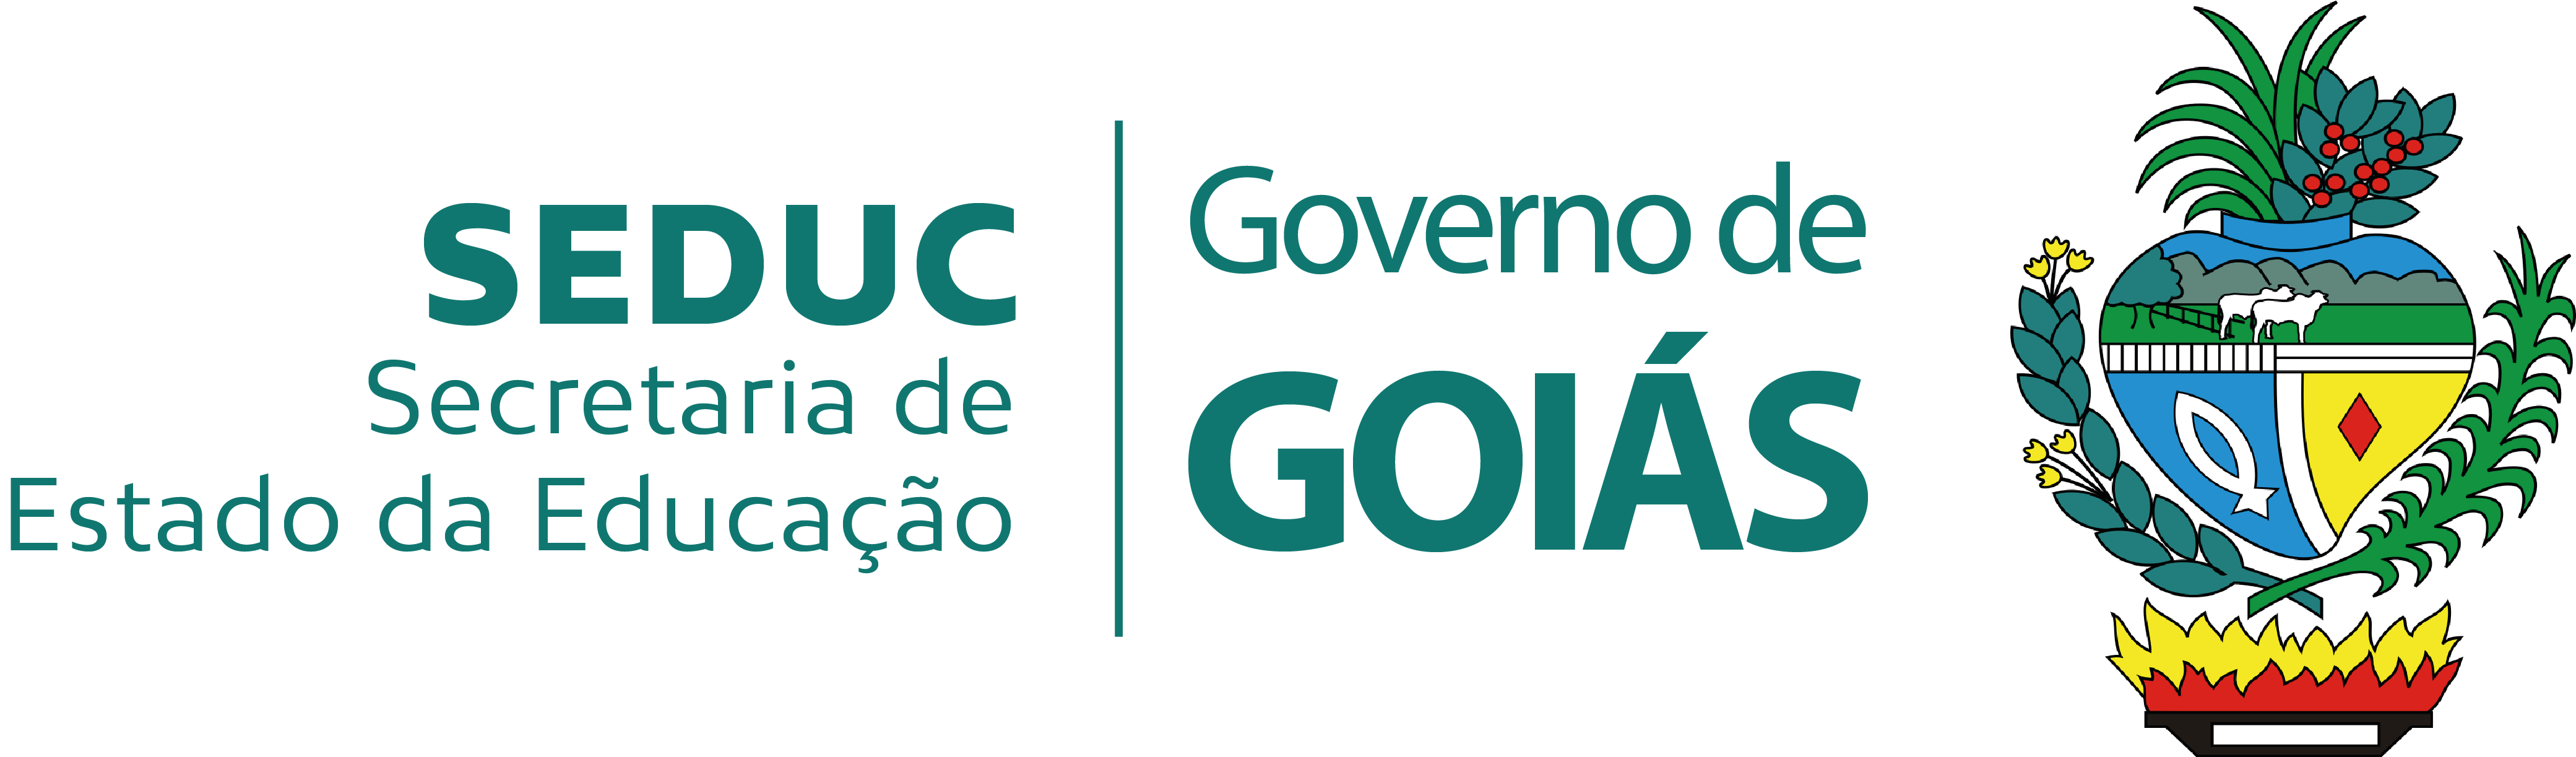 Governo de Goiás - Secretaria Estadual de Educação